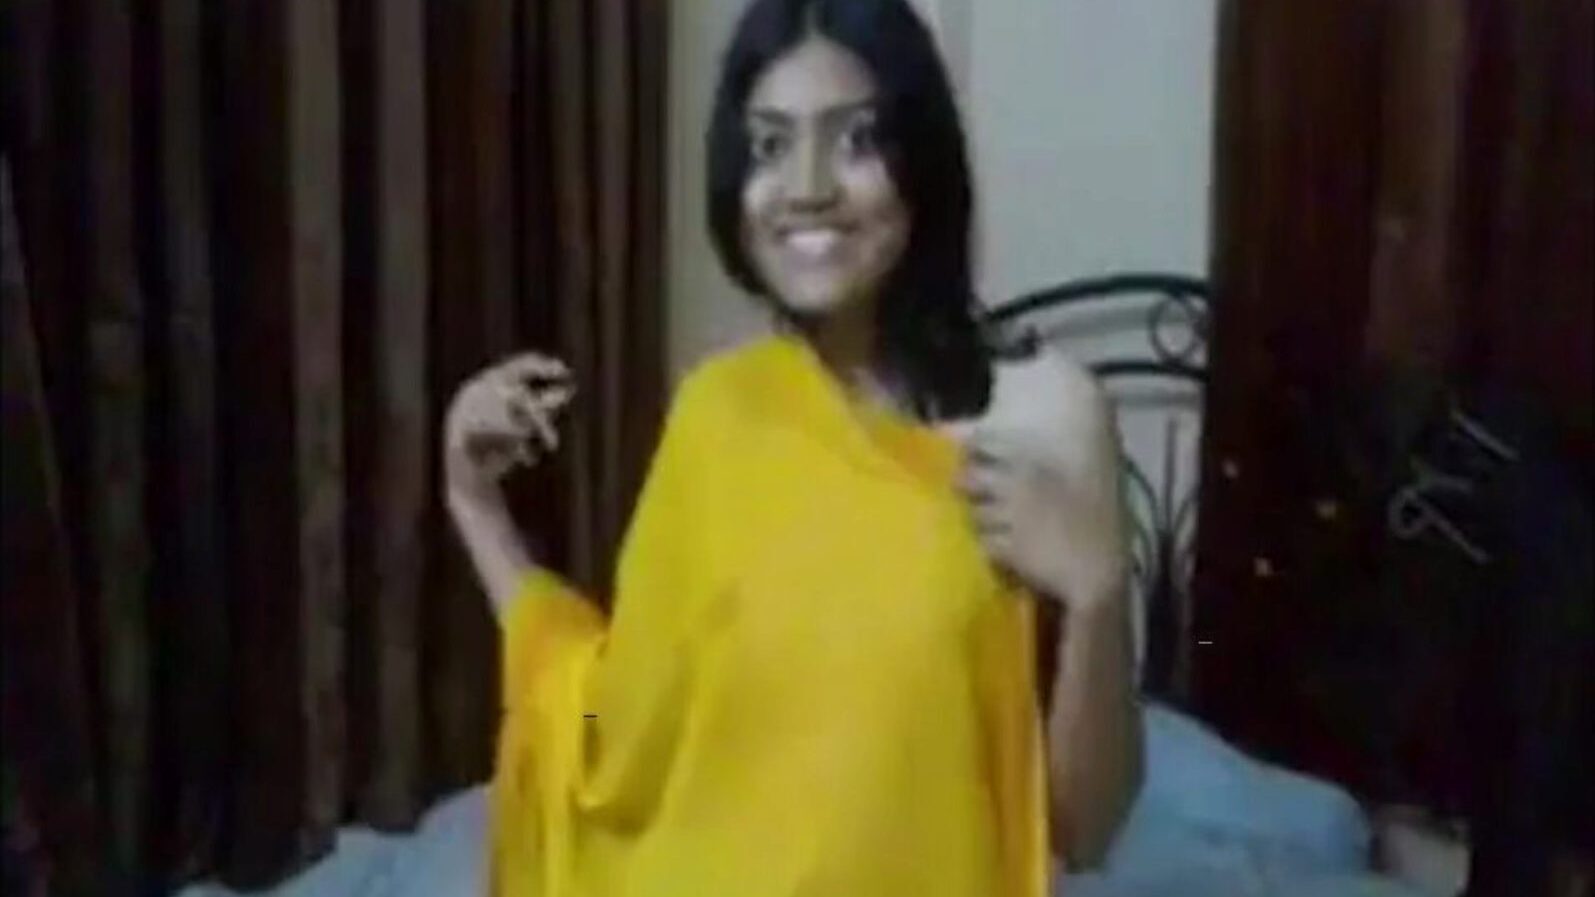 indiai főiskolai lány fasz mostohatestvér, pornó 0c: xhamster nézni indiai főiskolai lány fasz stepbrother film on xhamster, az óriási hd orgia cső oldalon rengeteg ingyenes ázsiai fasz online és szopás pornó epizódok